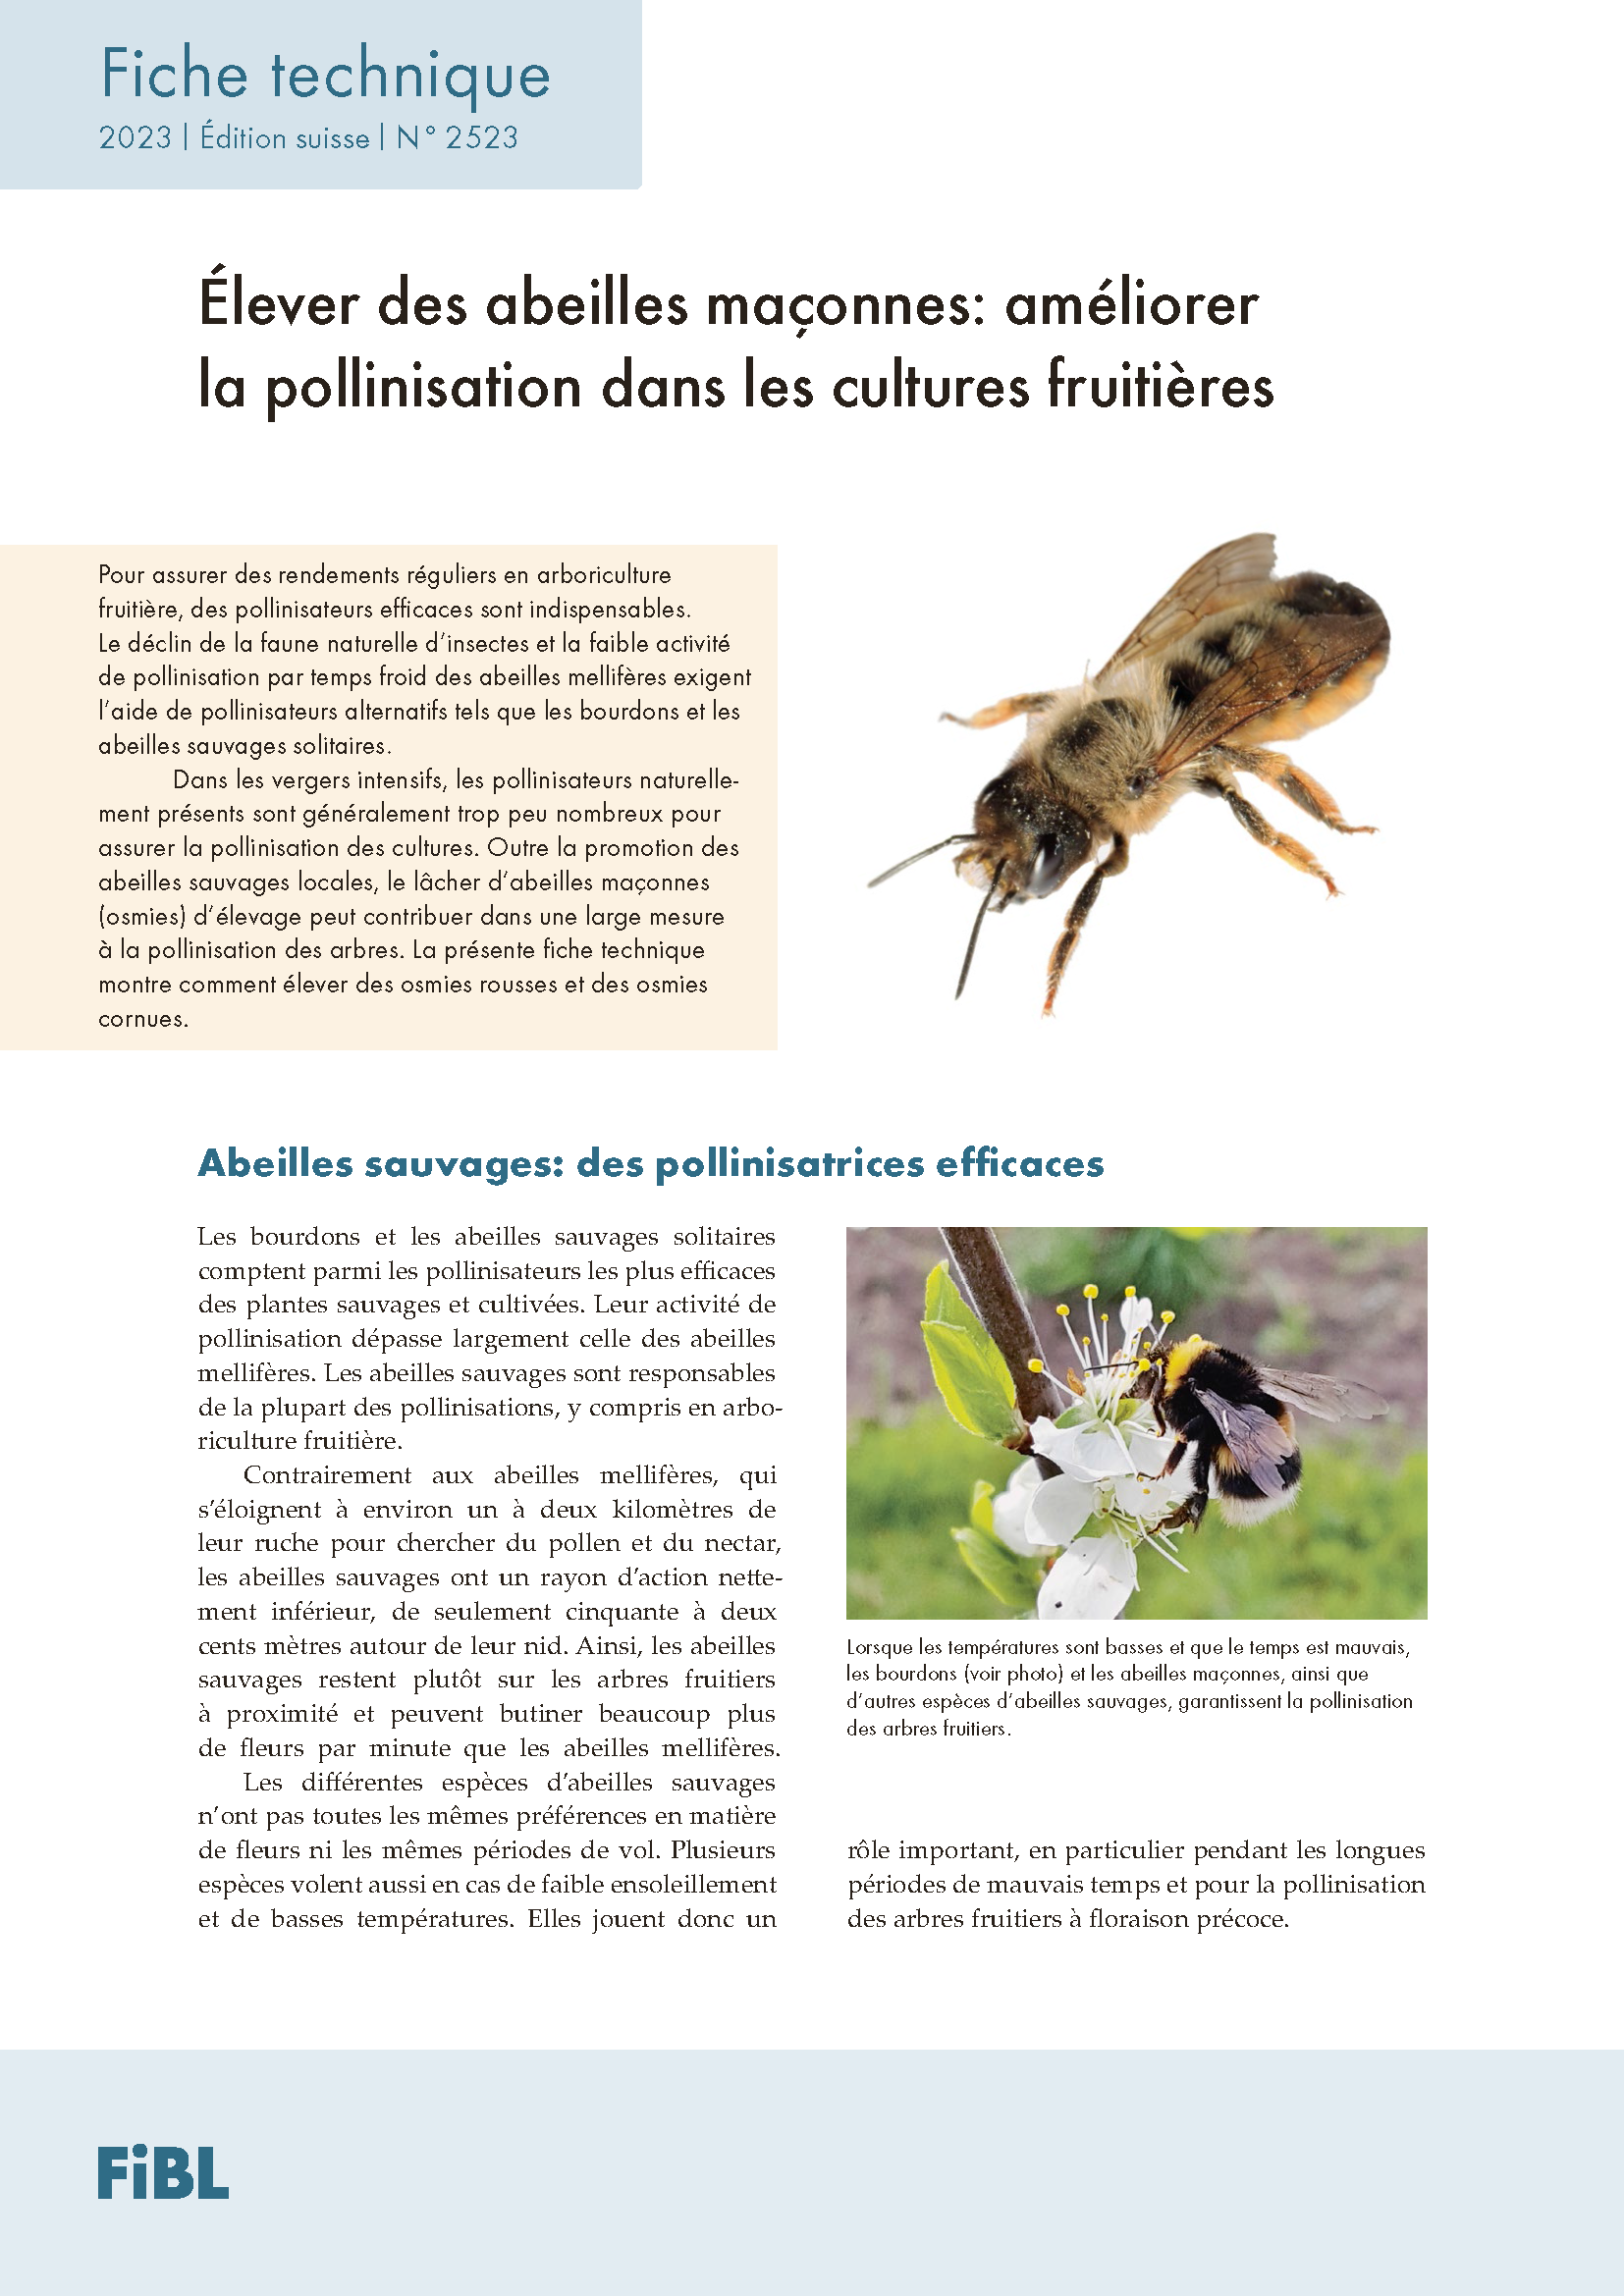 Cover: Les abeilles maçonnes, pollinisatrices efficaces